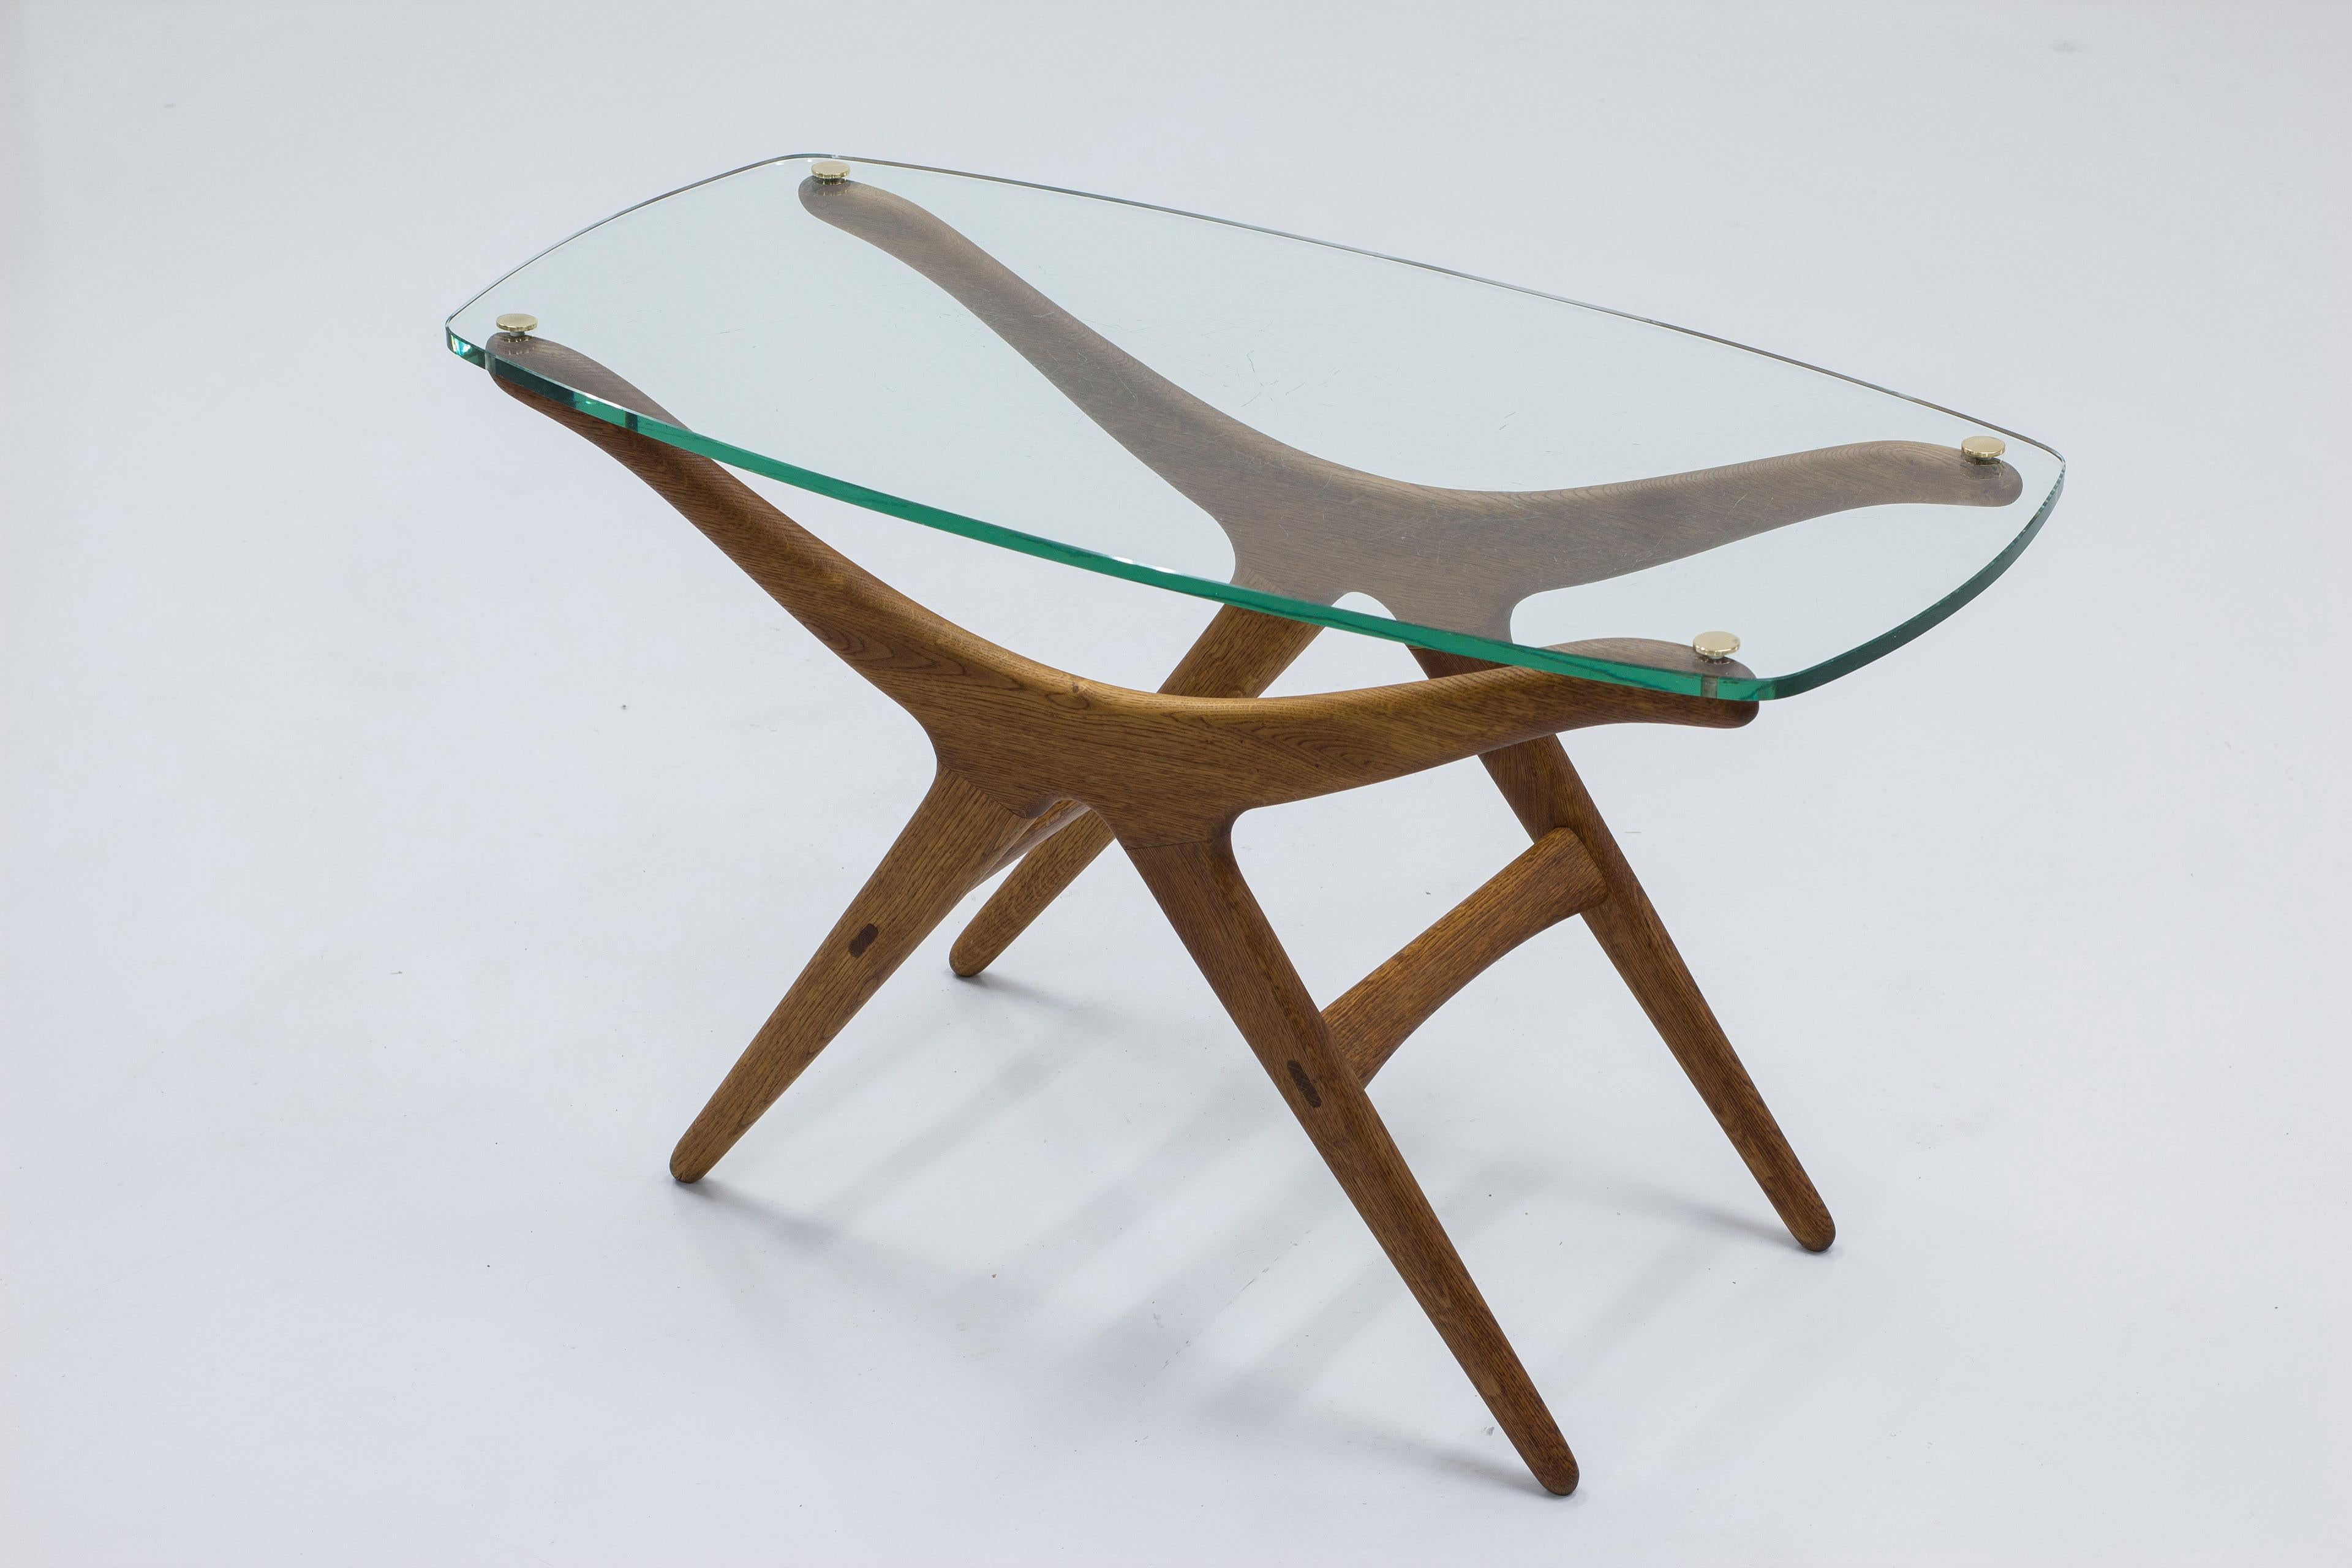 Table très rare conçue par H. Brockman Petersen. Produit par l'ébéniste Louis G. Thiersen & Søn en 1953. La table a été exposée à l'exposition de la Guild des ébénistes en 1953. La table n'a probablement jamais été mise en production après